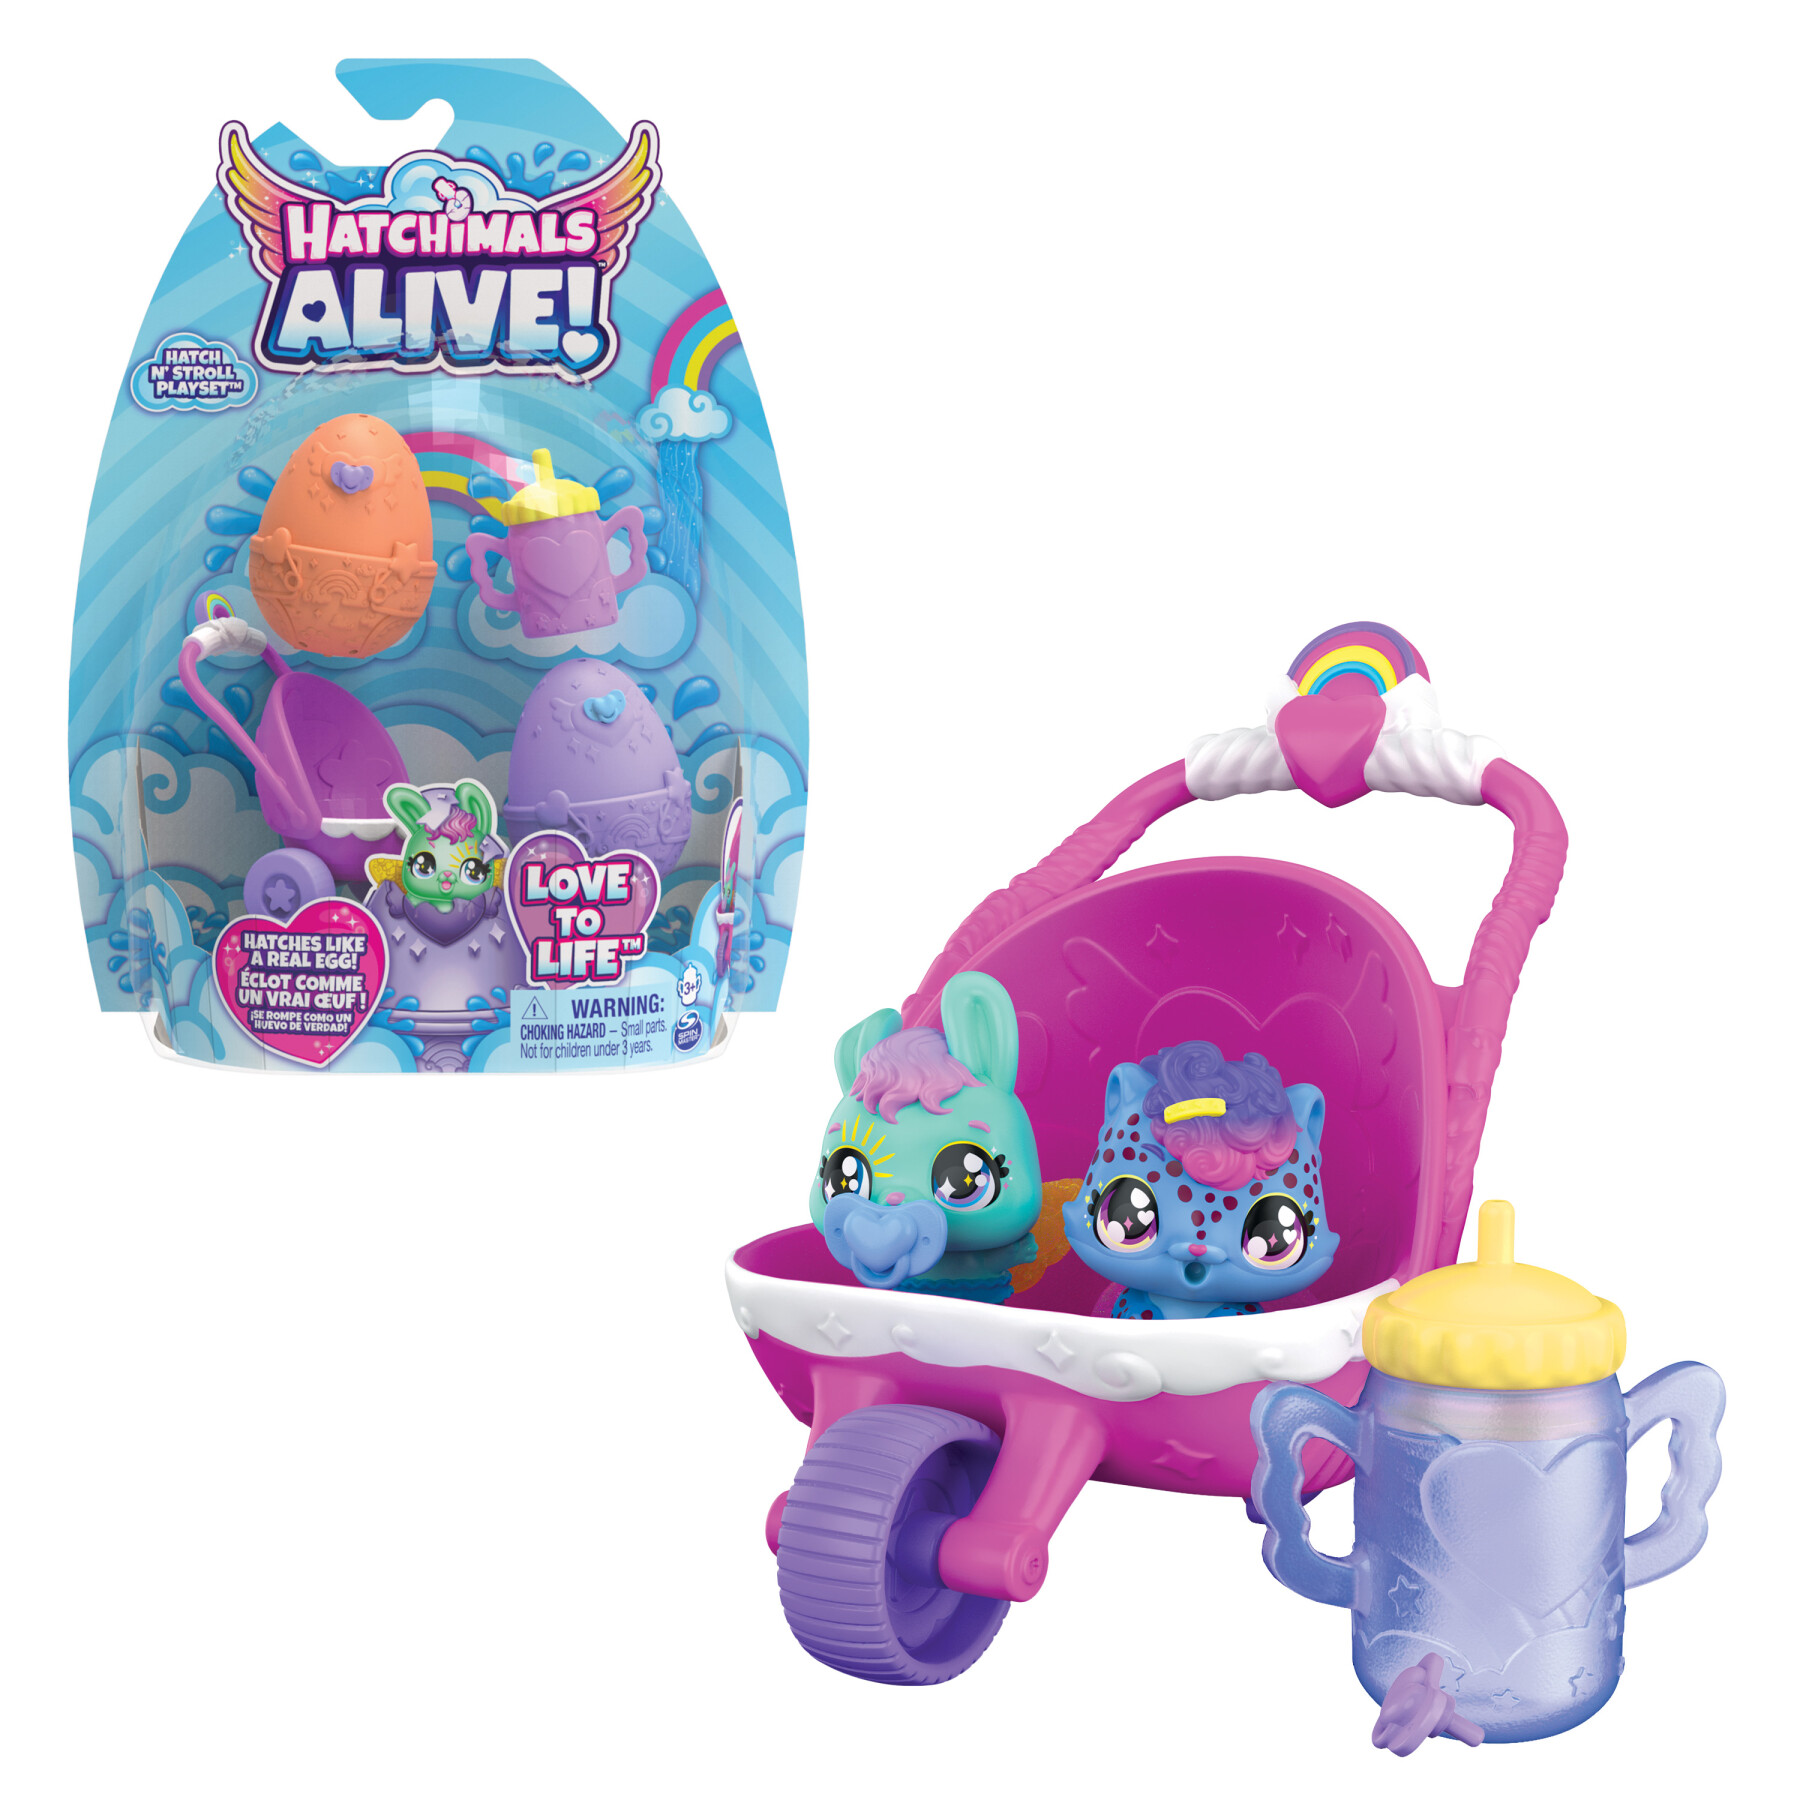 Hatchimals alive, confezione con due uova che si schiudono con l'acqua e  passeggino, giocattoli per bambine e bambini dai 3 anni in su - Toys Center